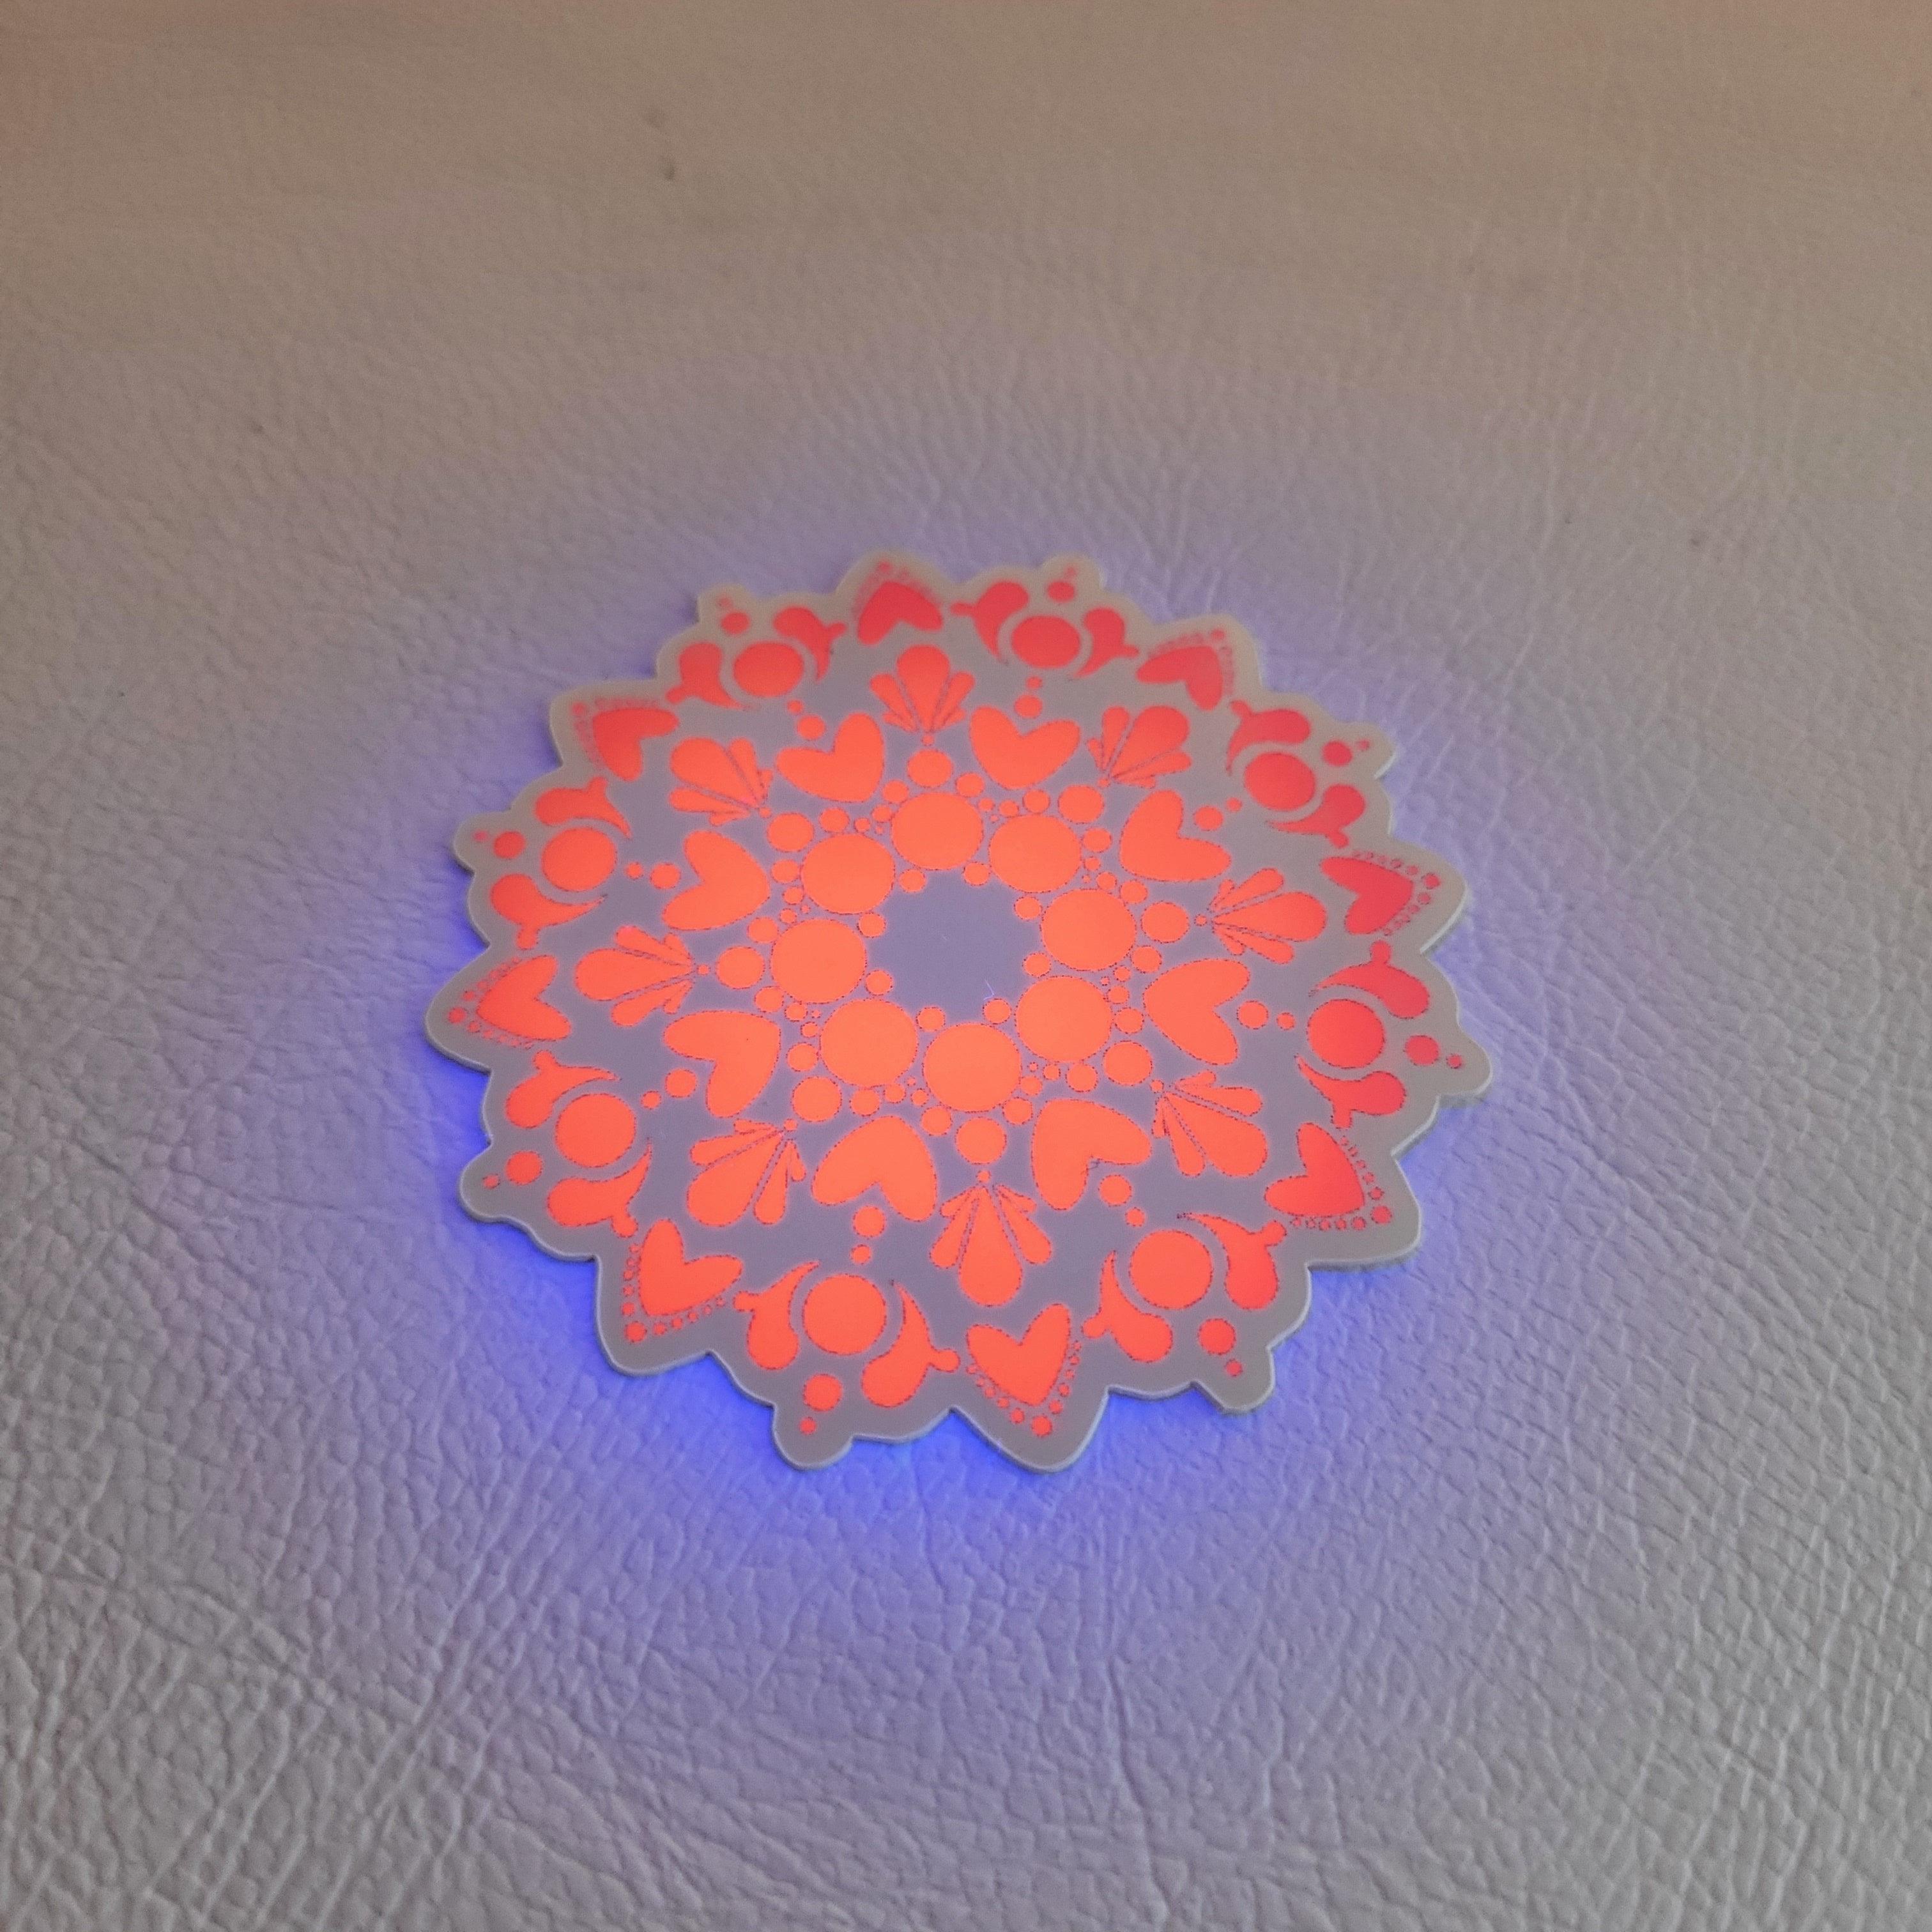 2" Pink UV Mandala Sticker - Bdotartsy